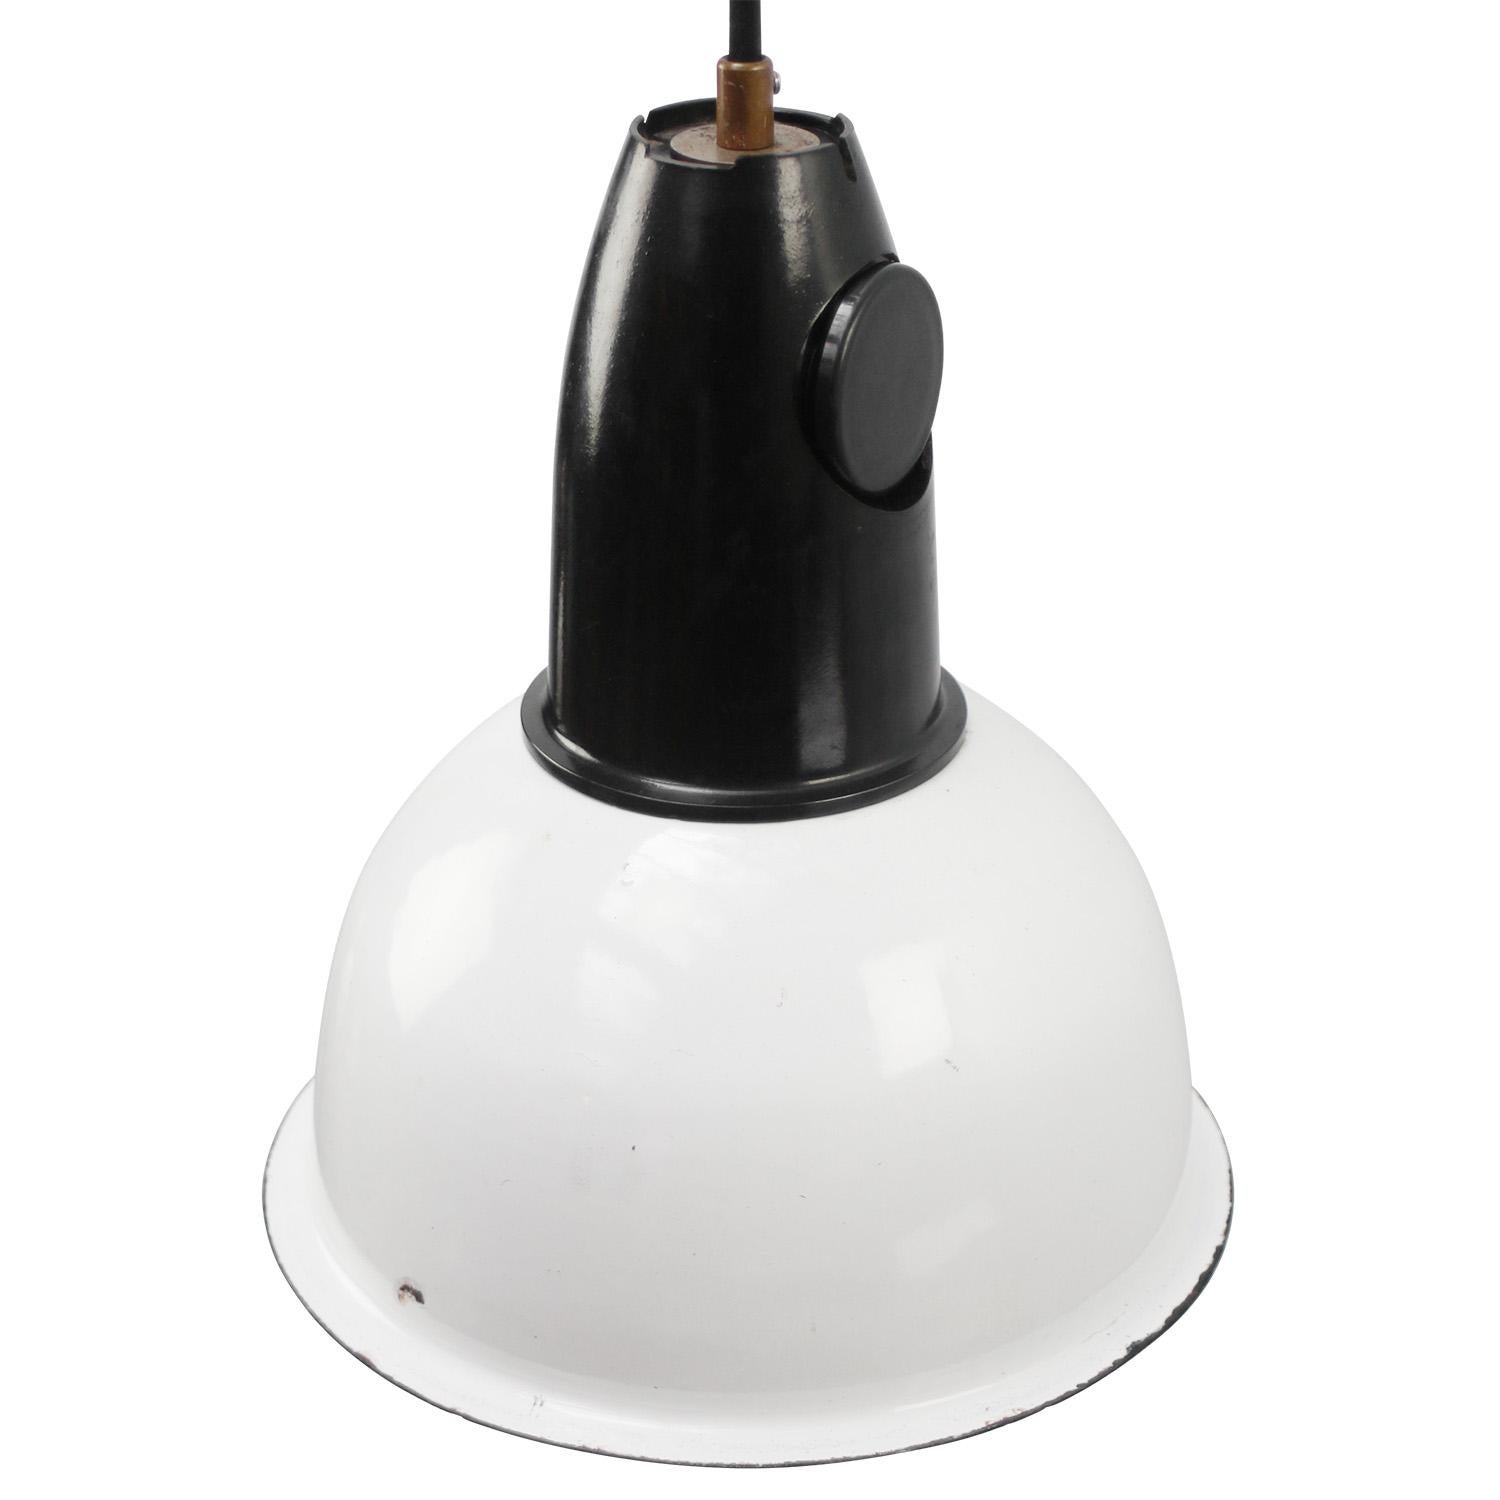 Seltene Industrielampe aus weißer Emaille mit Bakelitaufsatz. 

Gewicht: 1,20 kg / 2,6 lb

Der Preis gilt für jeden einzelnen Artikel. Alle Lampen sind nach internationalen Normen für Glühbirnen, energieeffiziente und LED-Lampen geeignet.